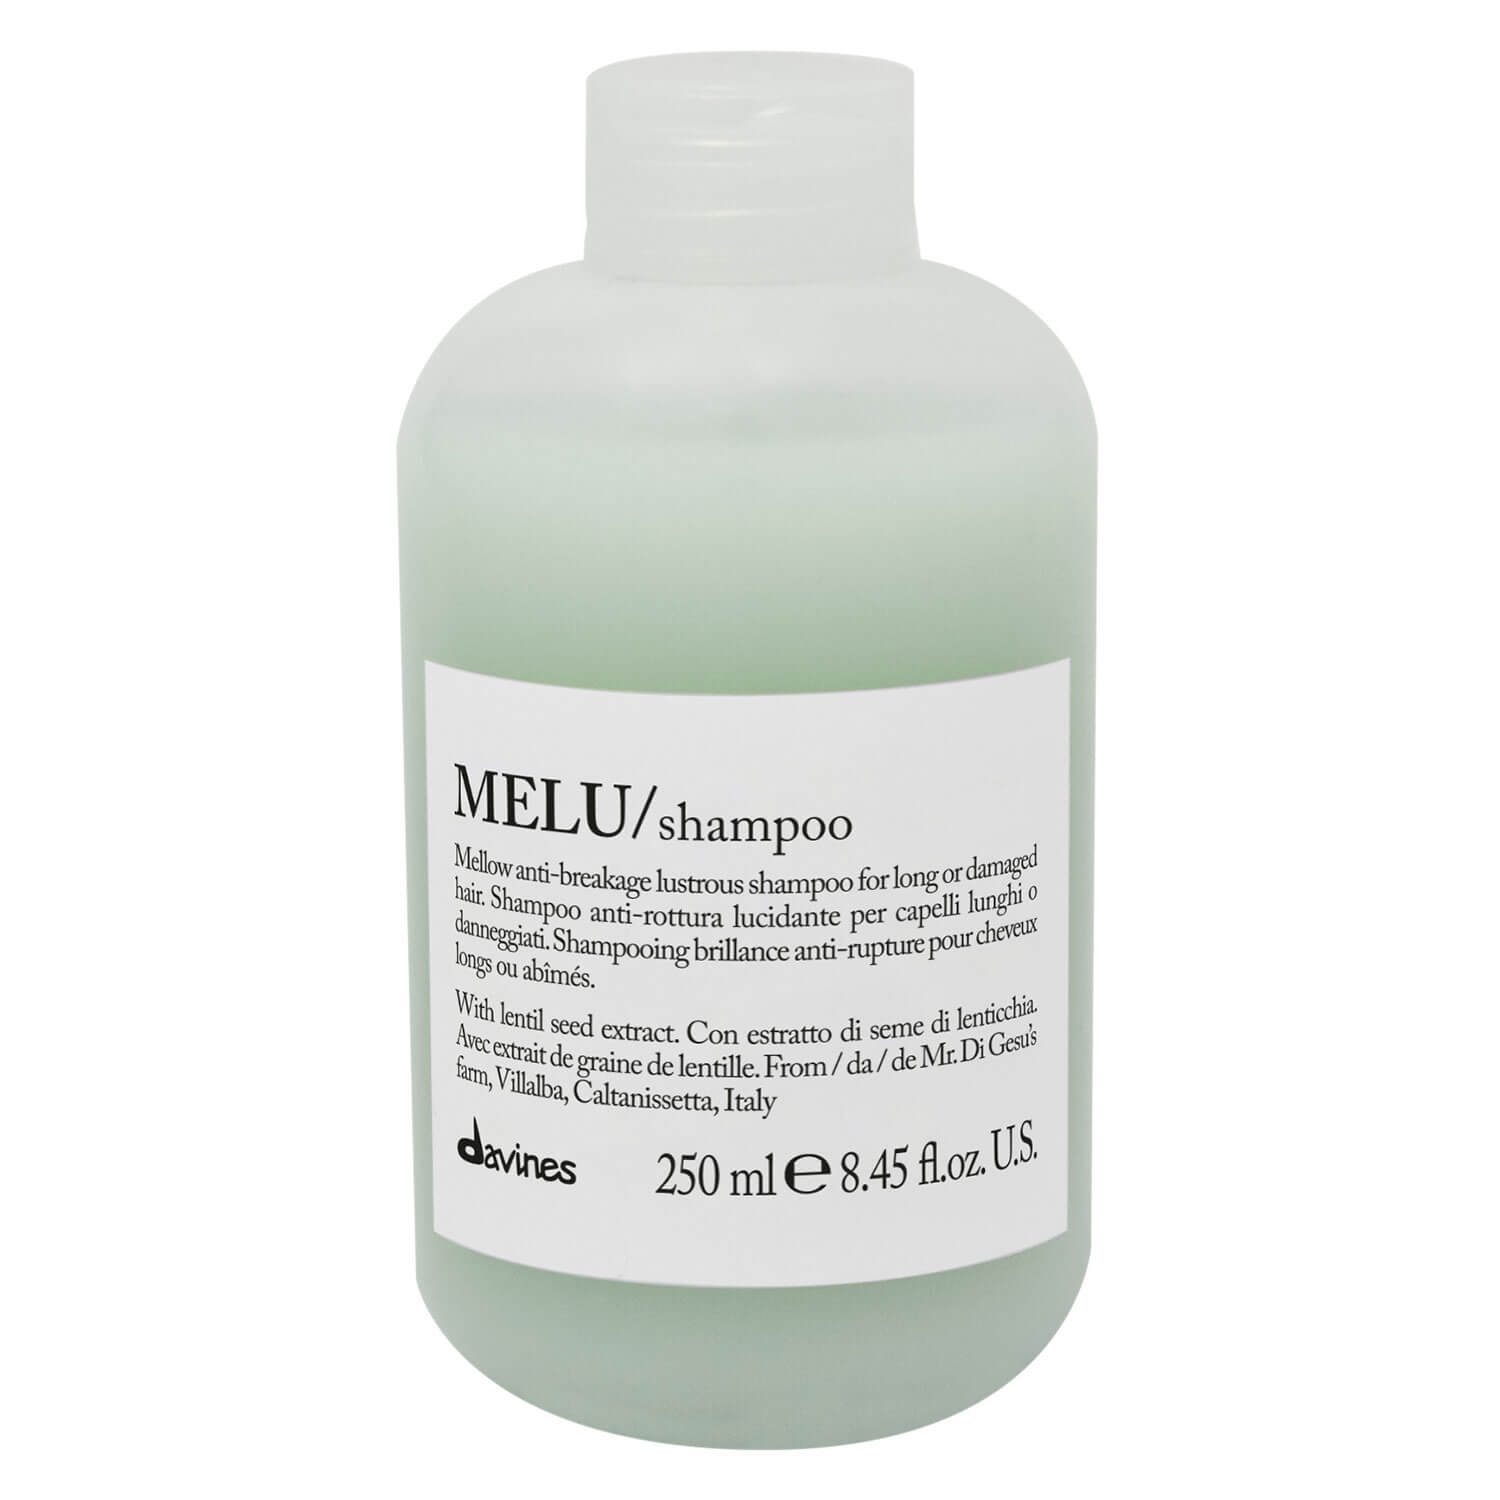 Produktbild von Essential Haircare - MELU Shampoo